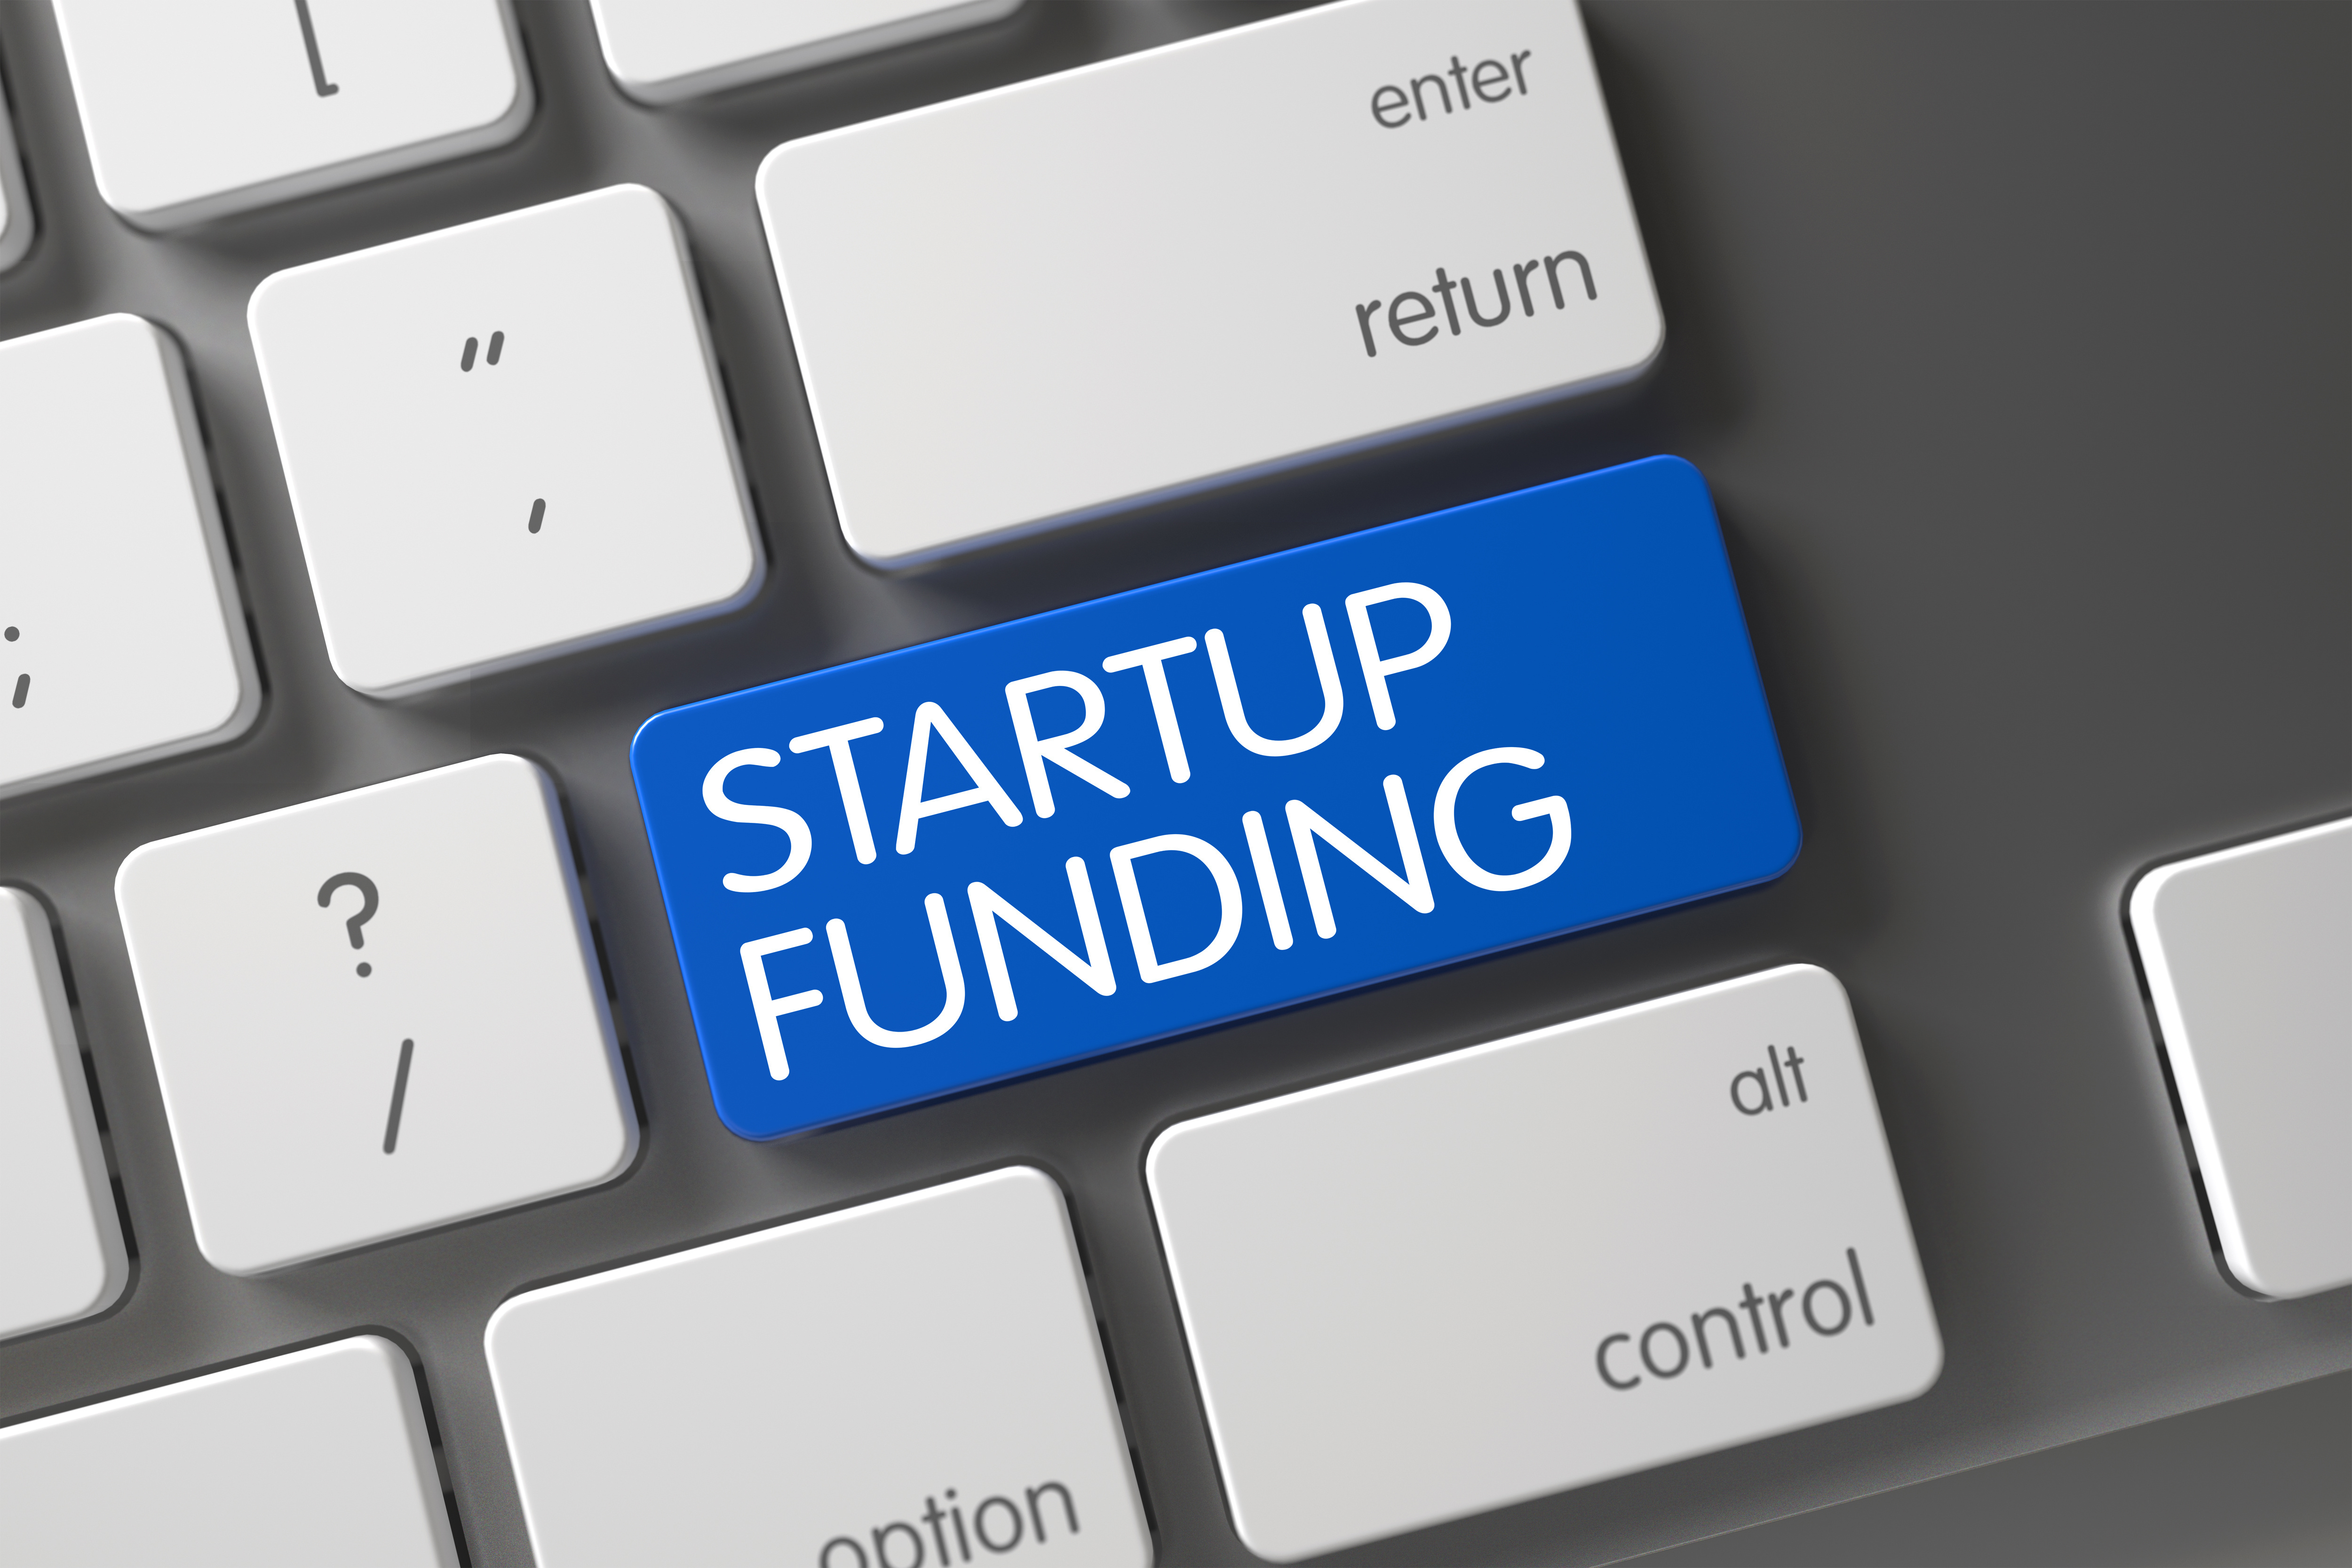 Start-ul tech AMSIMCEL din Suceava vrea să atragă o finanţare totală de 400.000 euro, iar până acum a reuşit să strângă 100.000 euro prin platforma SeedBlink